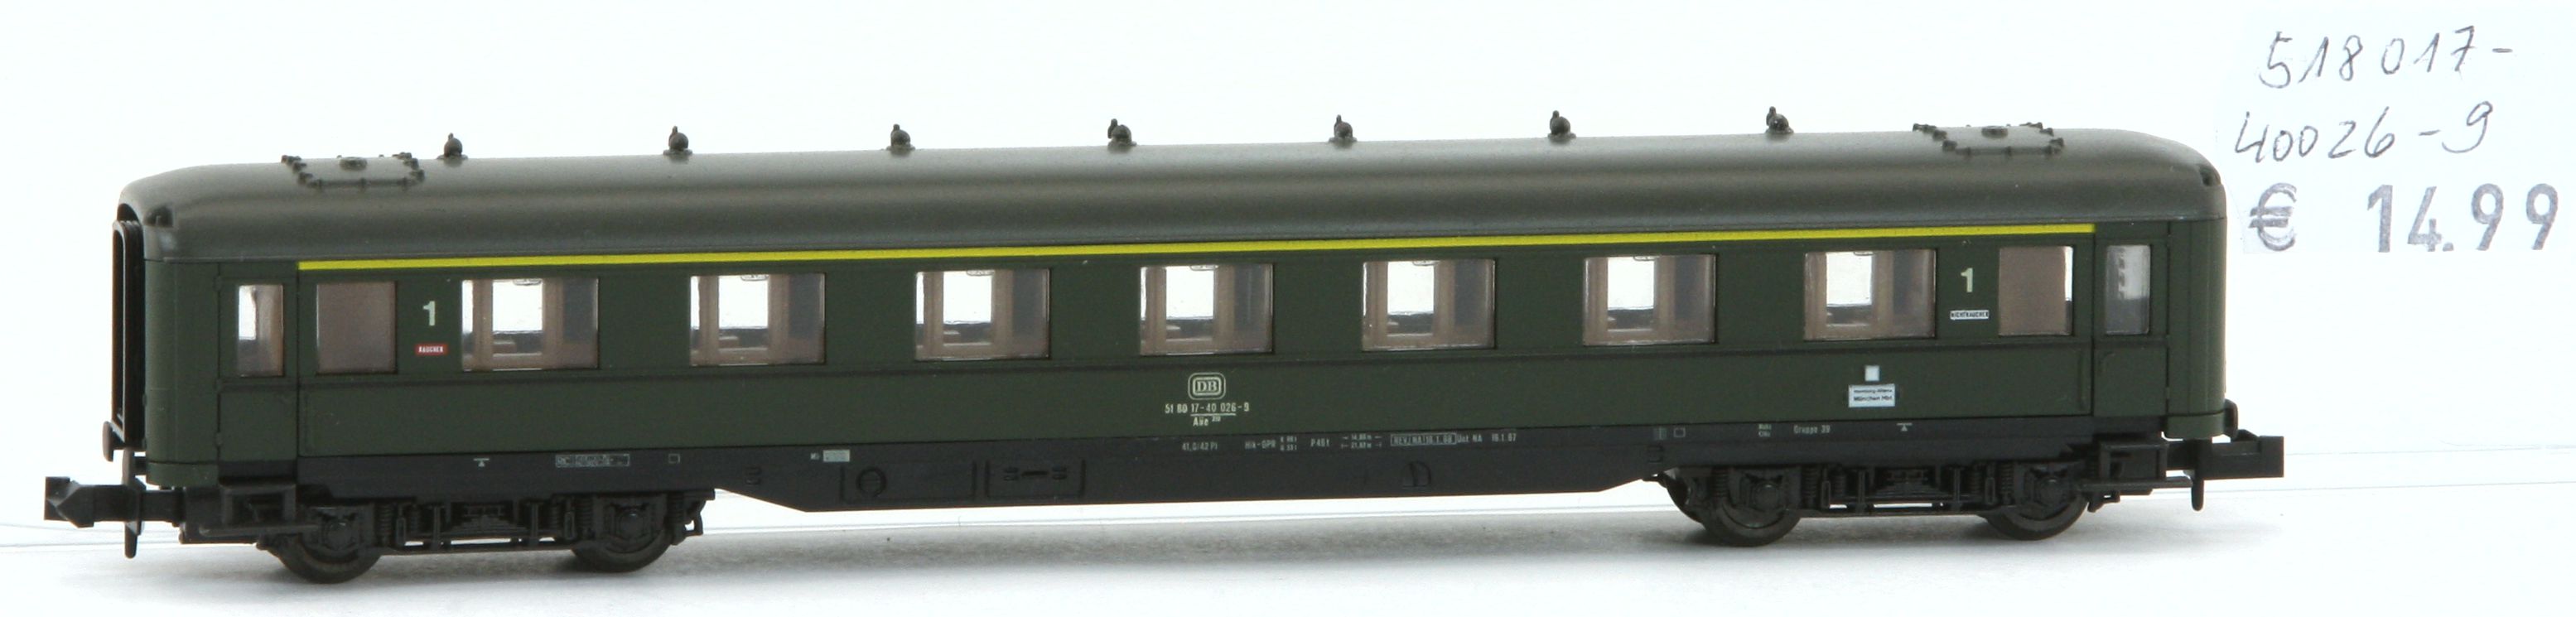 Roco 518017400269-G - Reisezugwagen, DB, grün